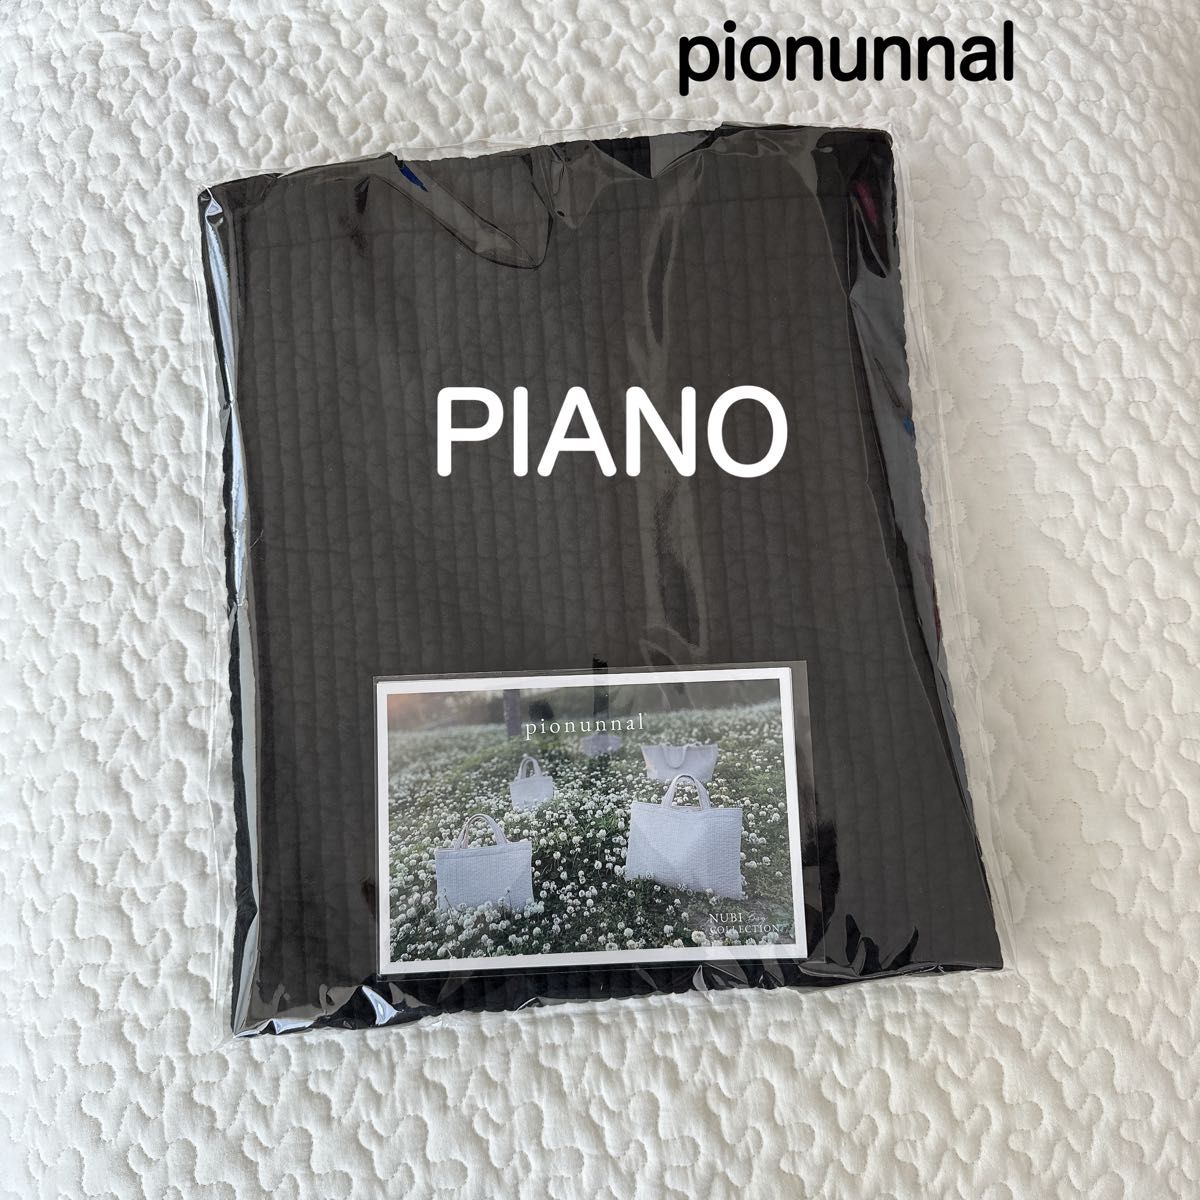 新品未開封品 ピオヌンナル PIANO ピアノ ブラック 黒 ヌビバッグ 